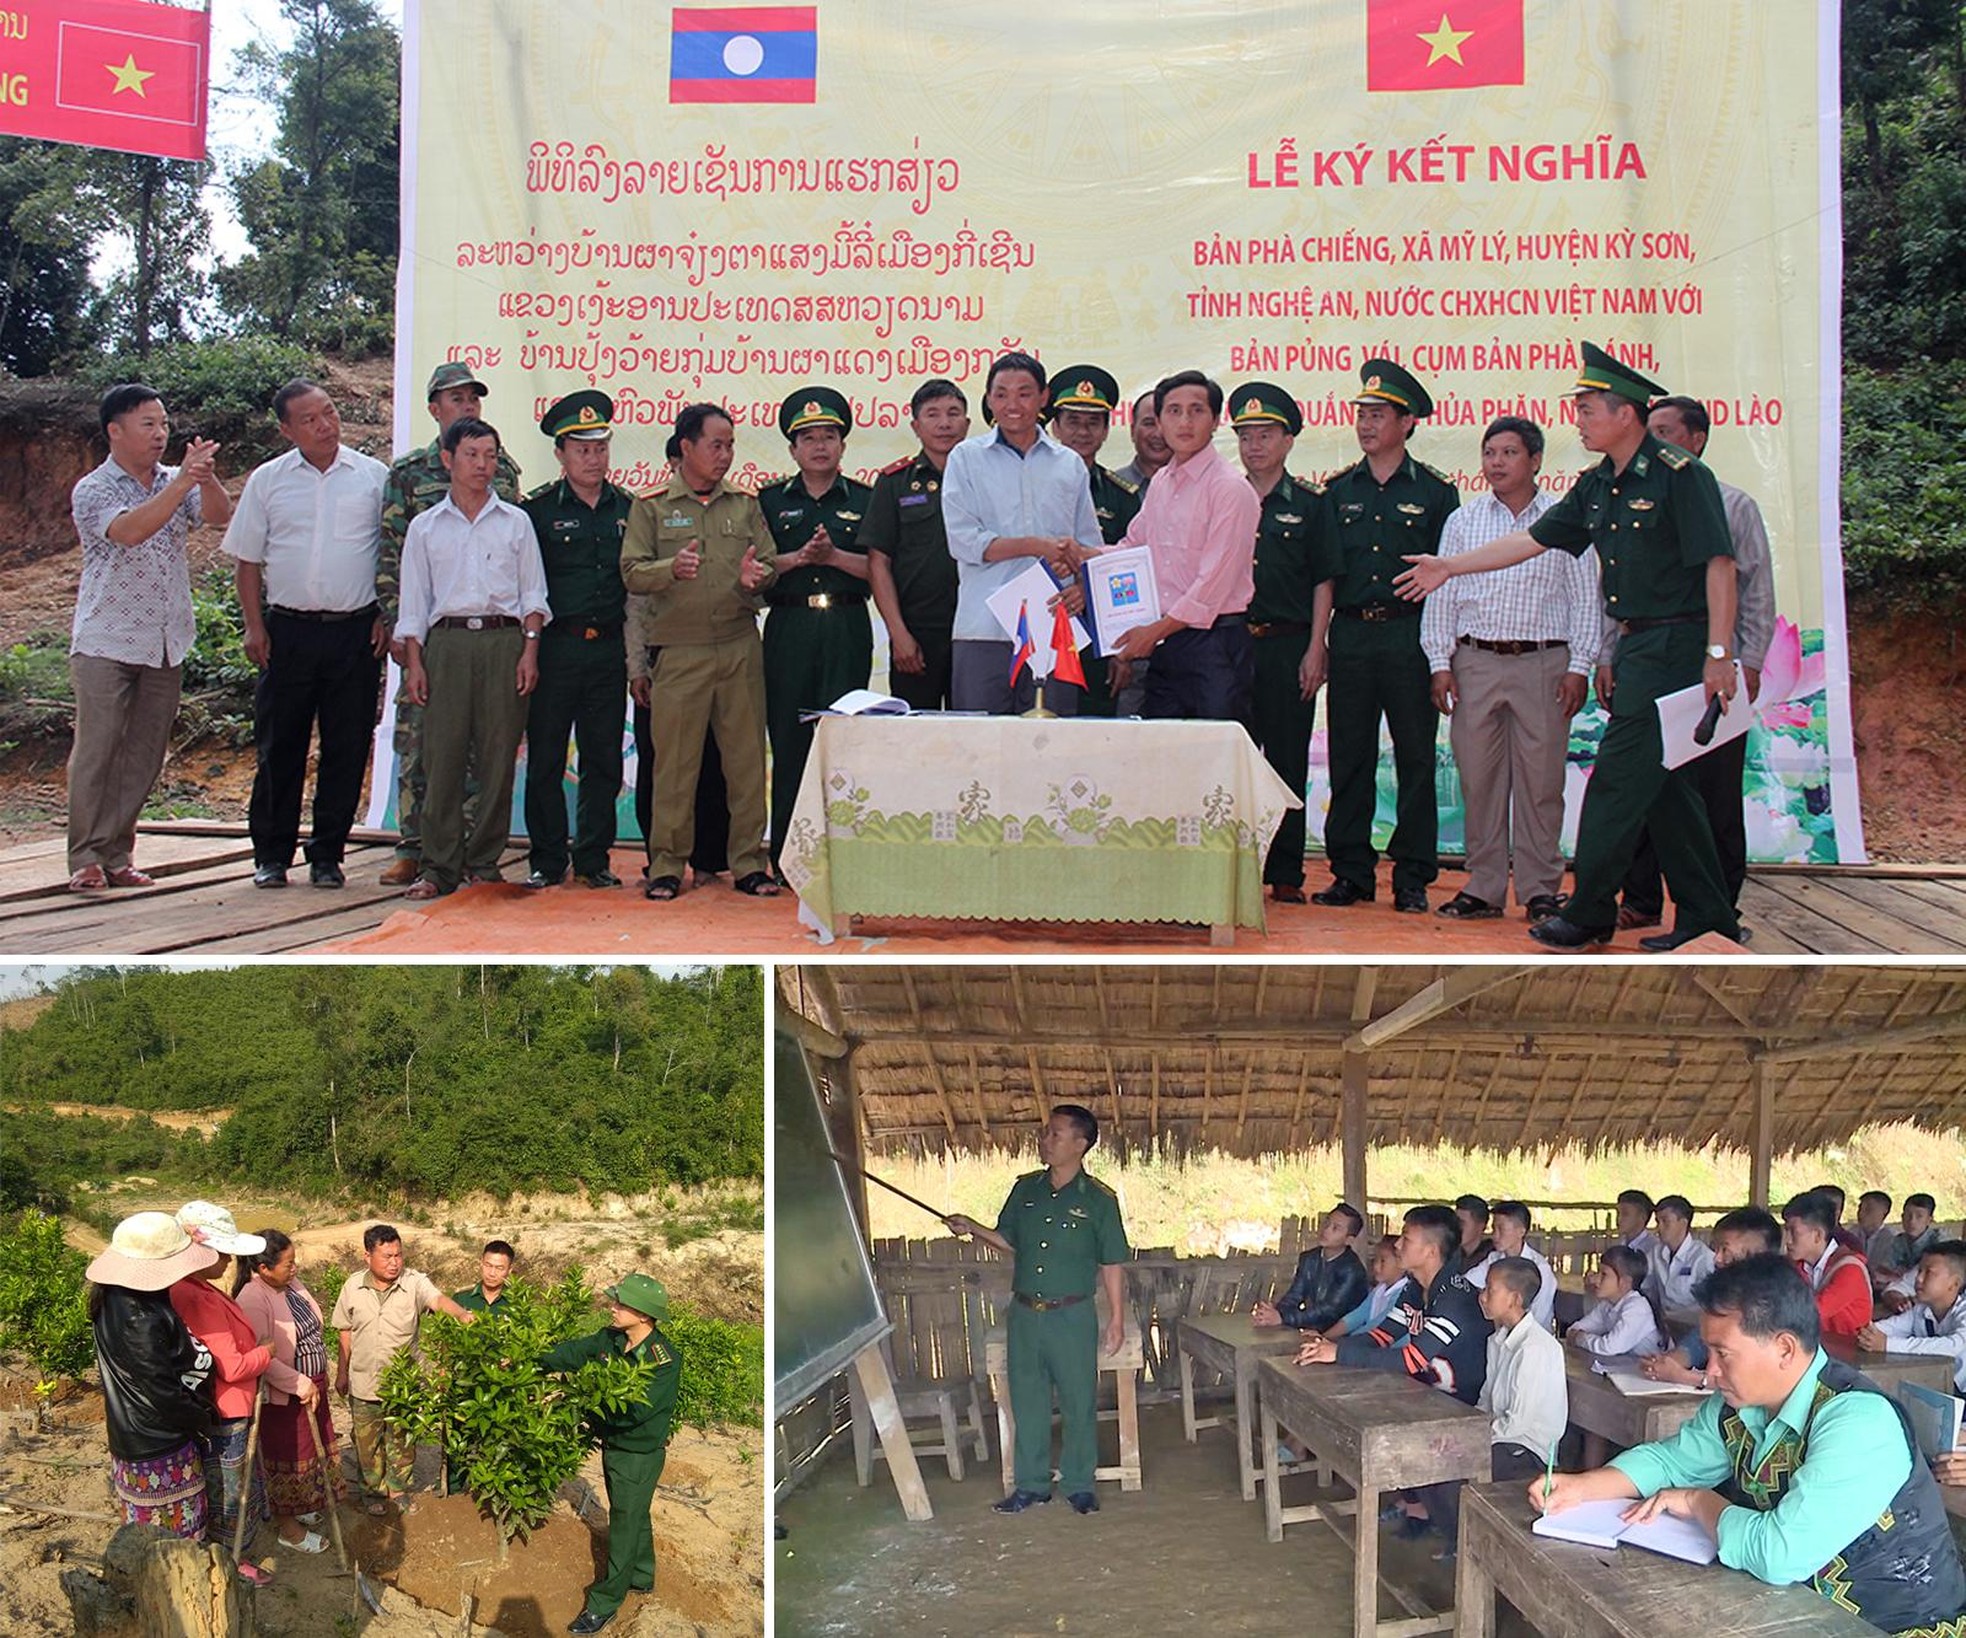 Mối quan hệ hữu nghị truyền thống, hợp tác toàn diện giữa Nghệ An và các tỉnh nước bạn Lào ảnh 4